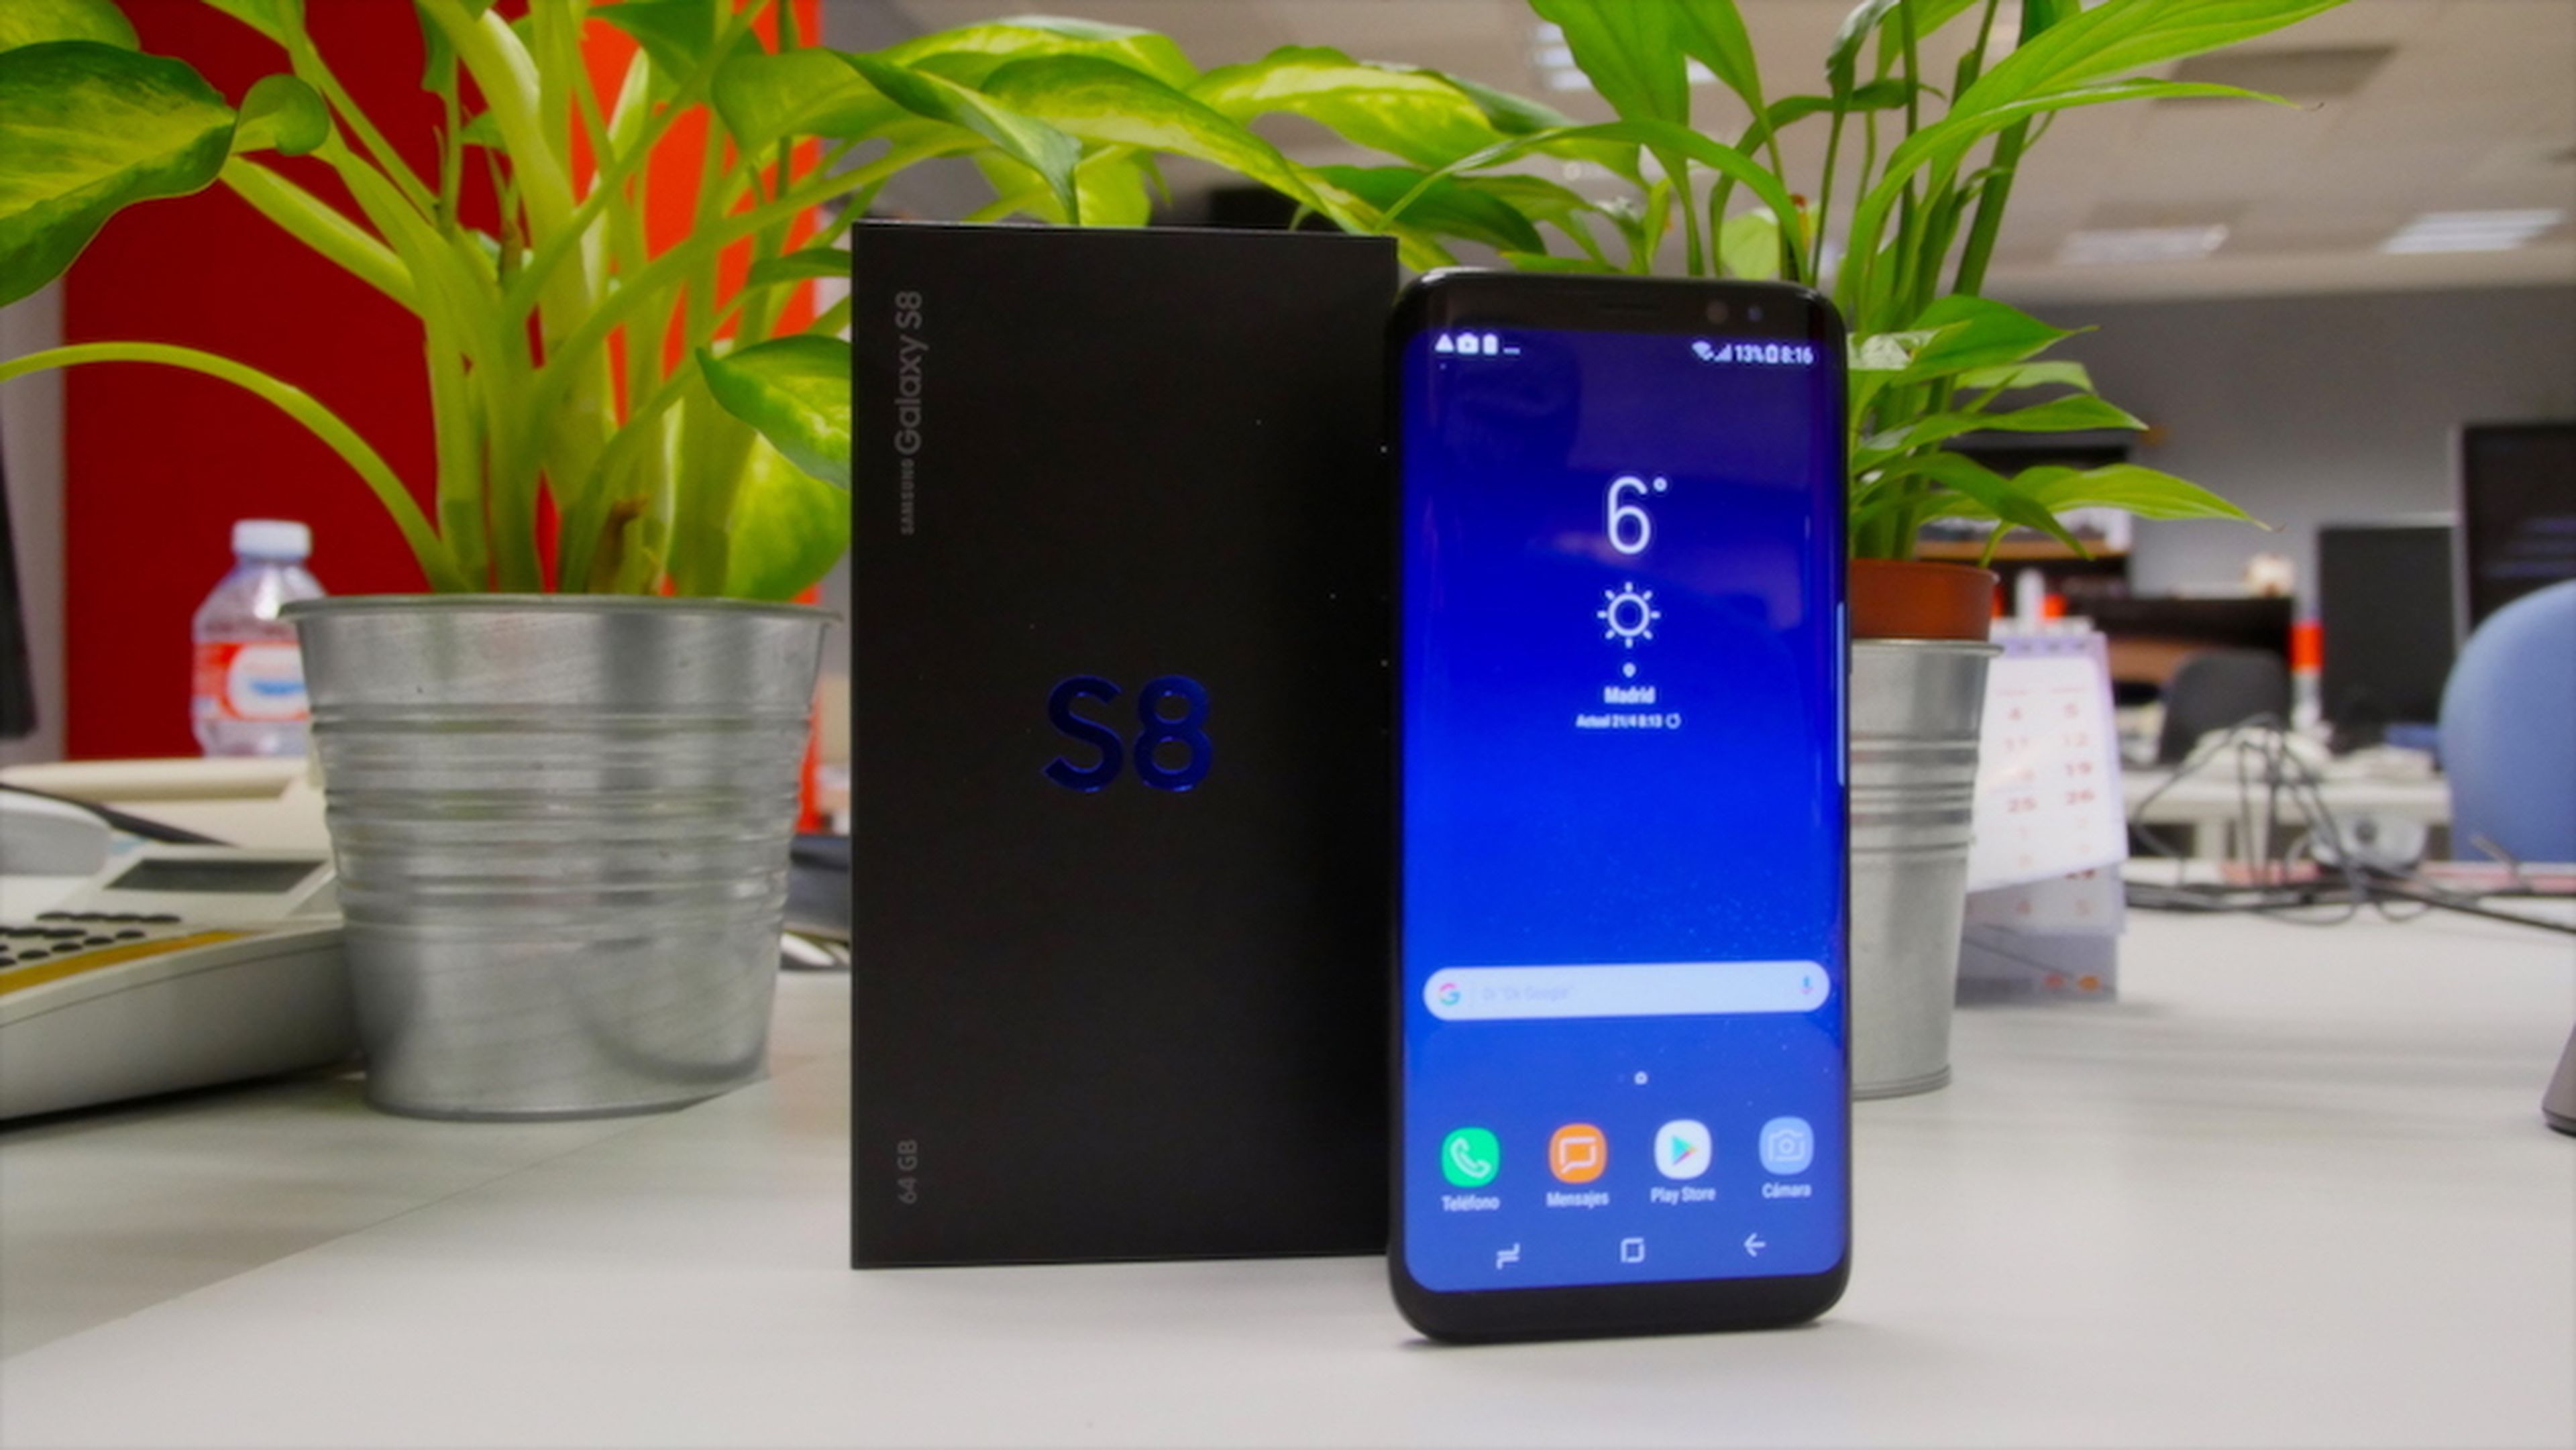 Unboxing en vídeo del Samsung Galaxy S8